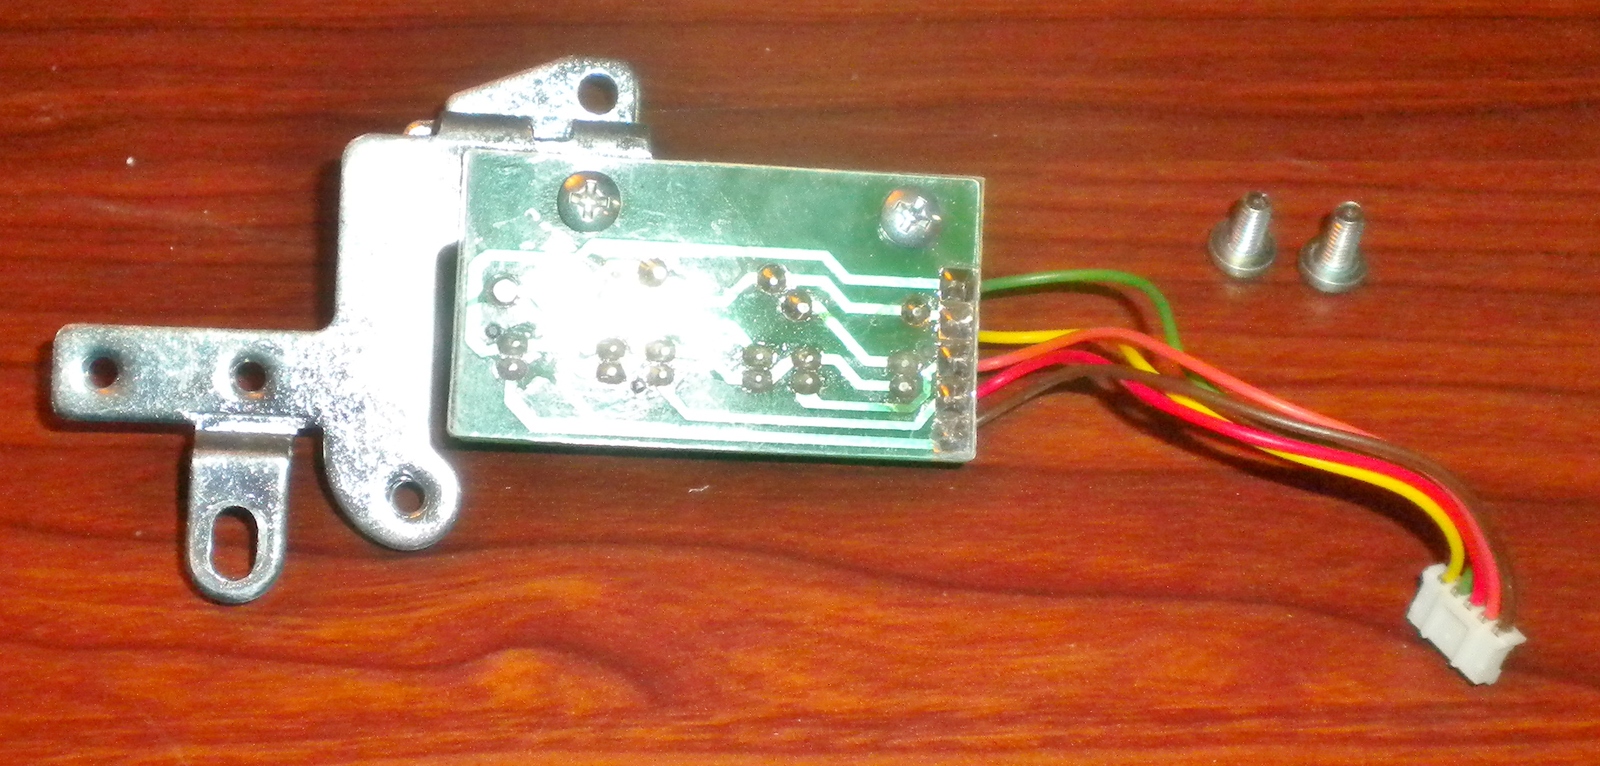 Singer 7436 Ingenuity PCB Shaft Encoder Sensor #87527 On Bracket w/Screws - $12.50